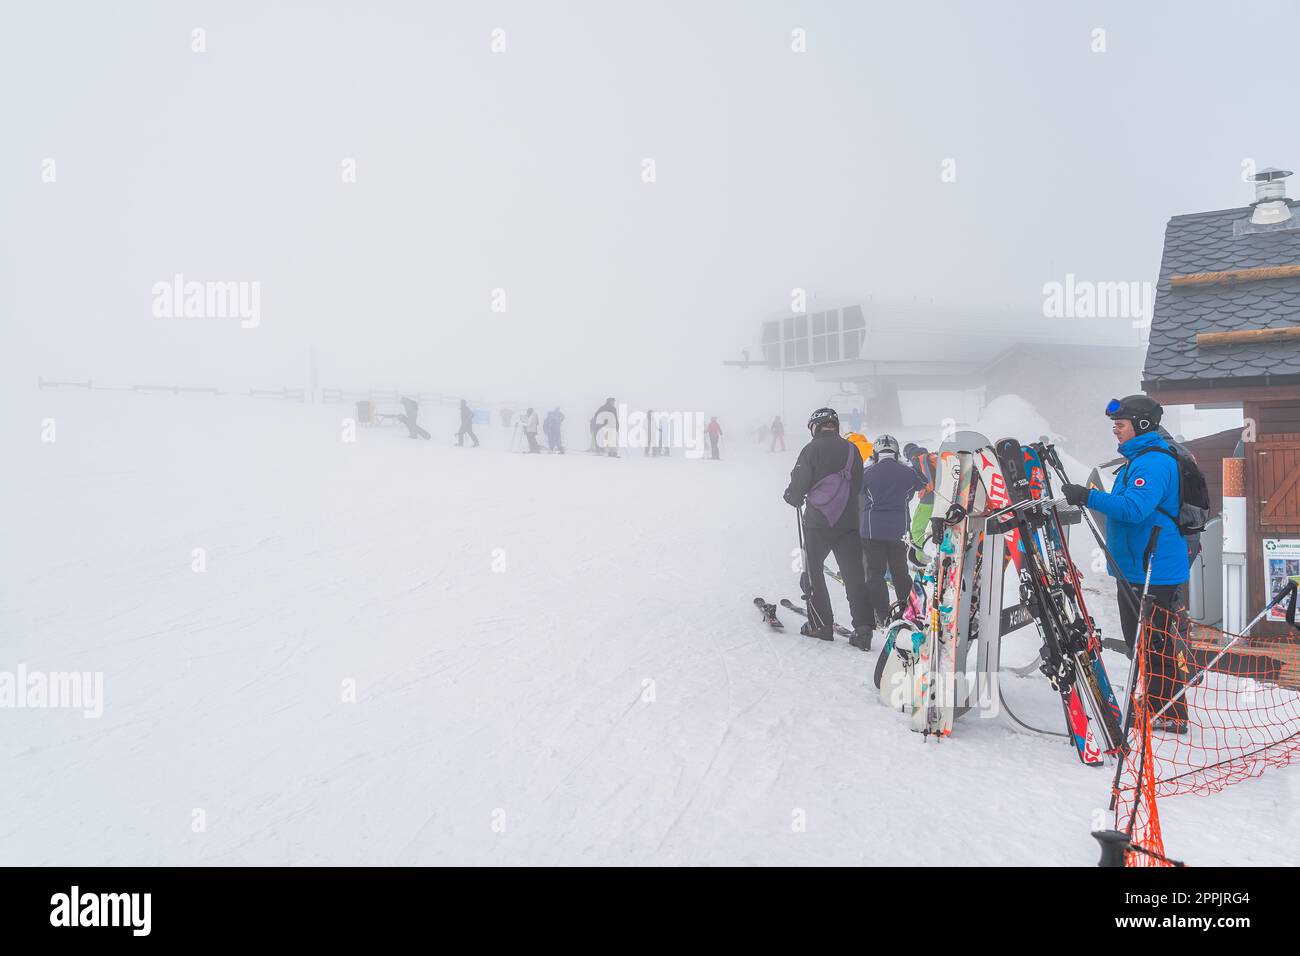 Skifahrer und Snowboarder, die den Skilift auf einem Berg verlassen, schlechte Sicht durch starken Nebel, Andorra Stockfoto